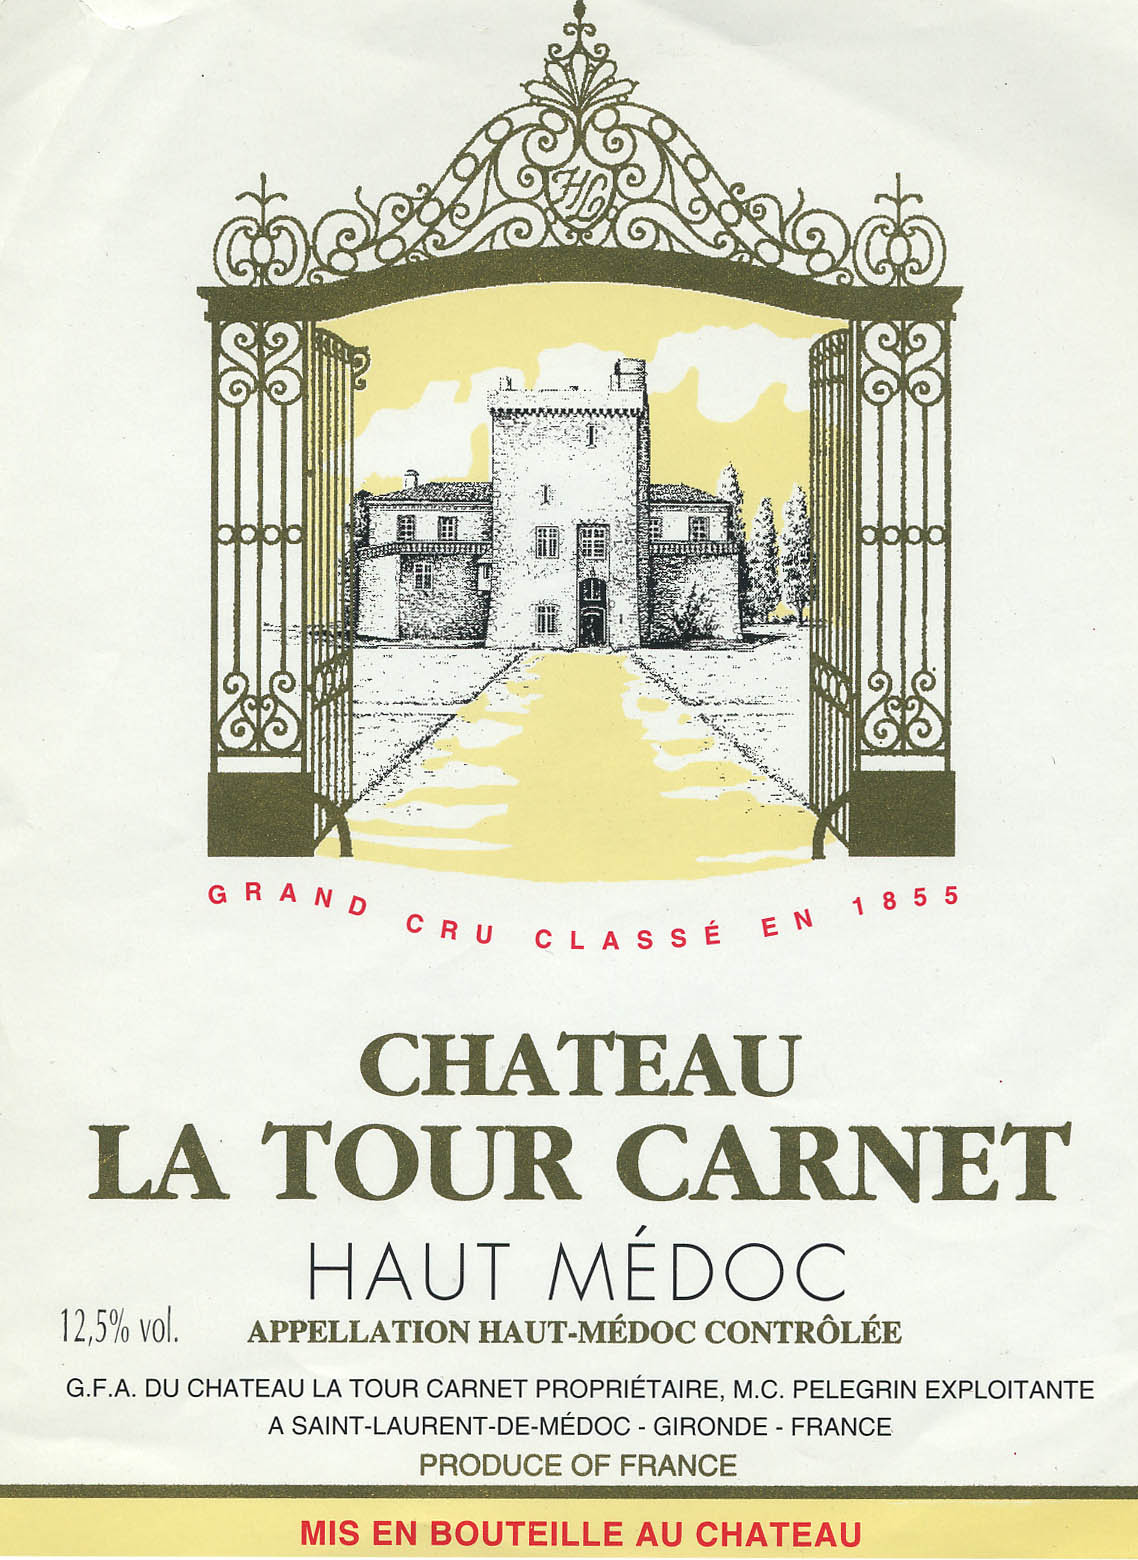 Chateau La Tour Carnet label